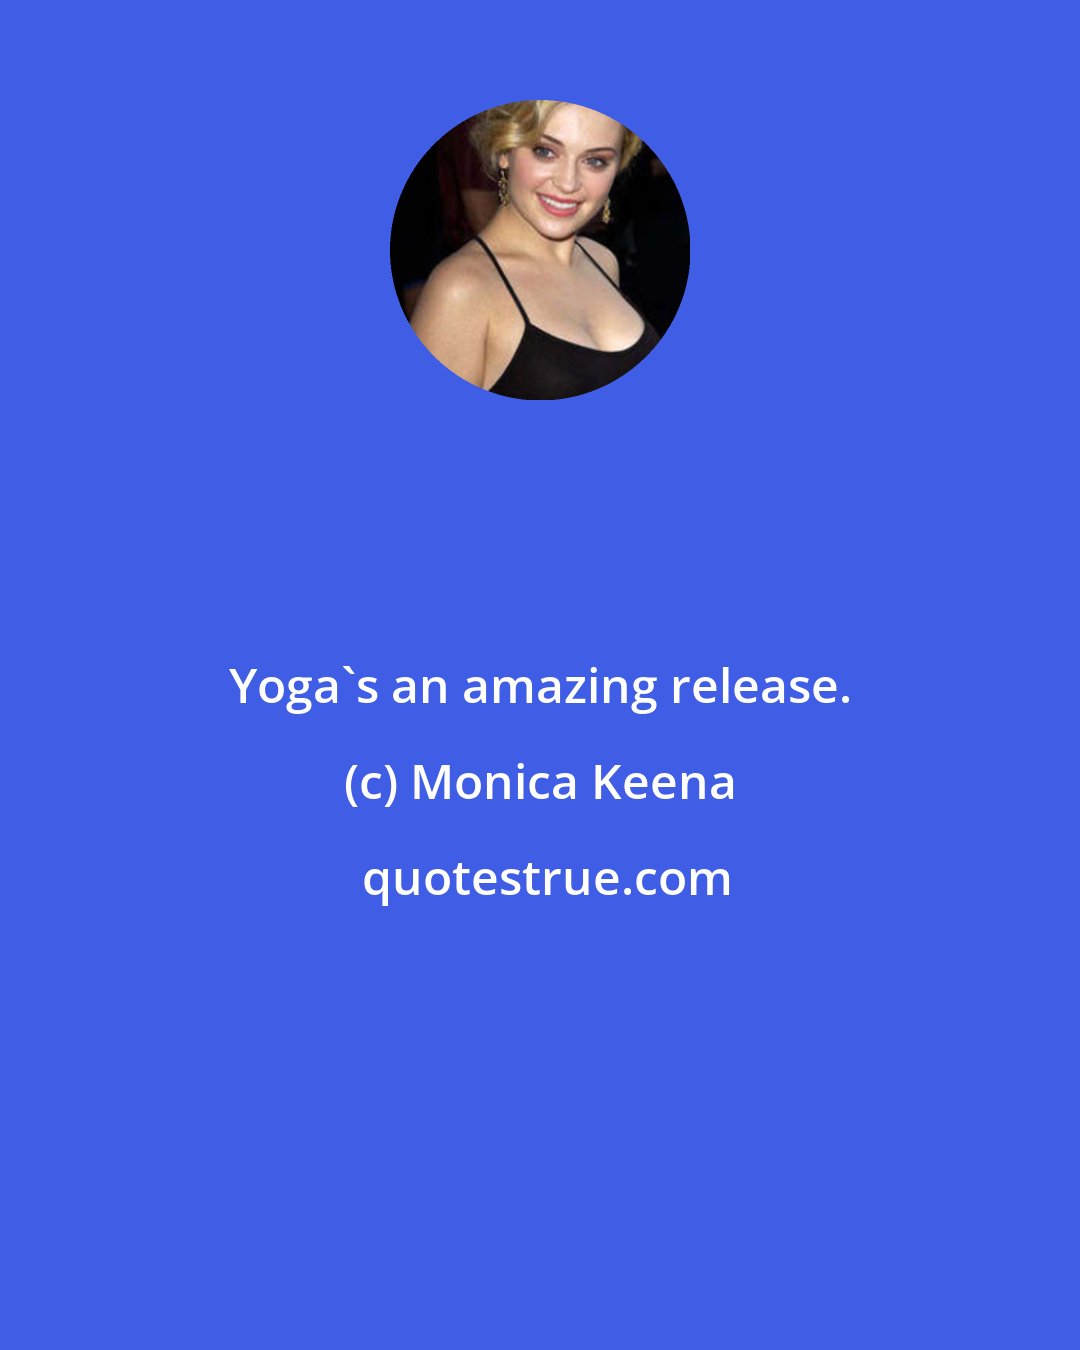 Monica Keena: Yoga's an amazing release.